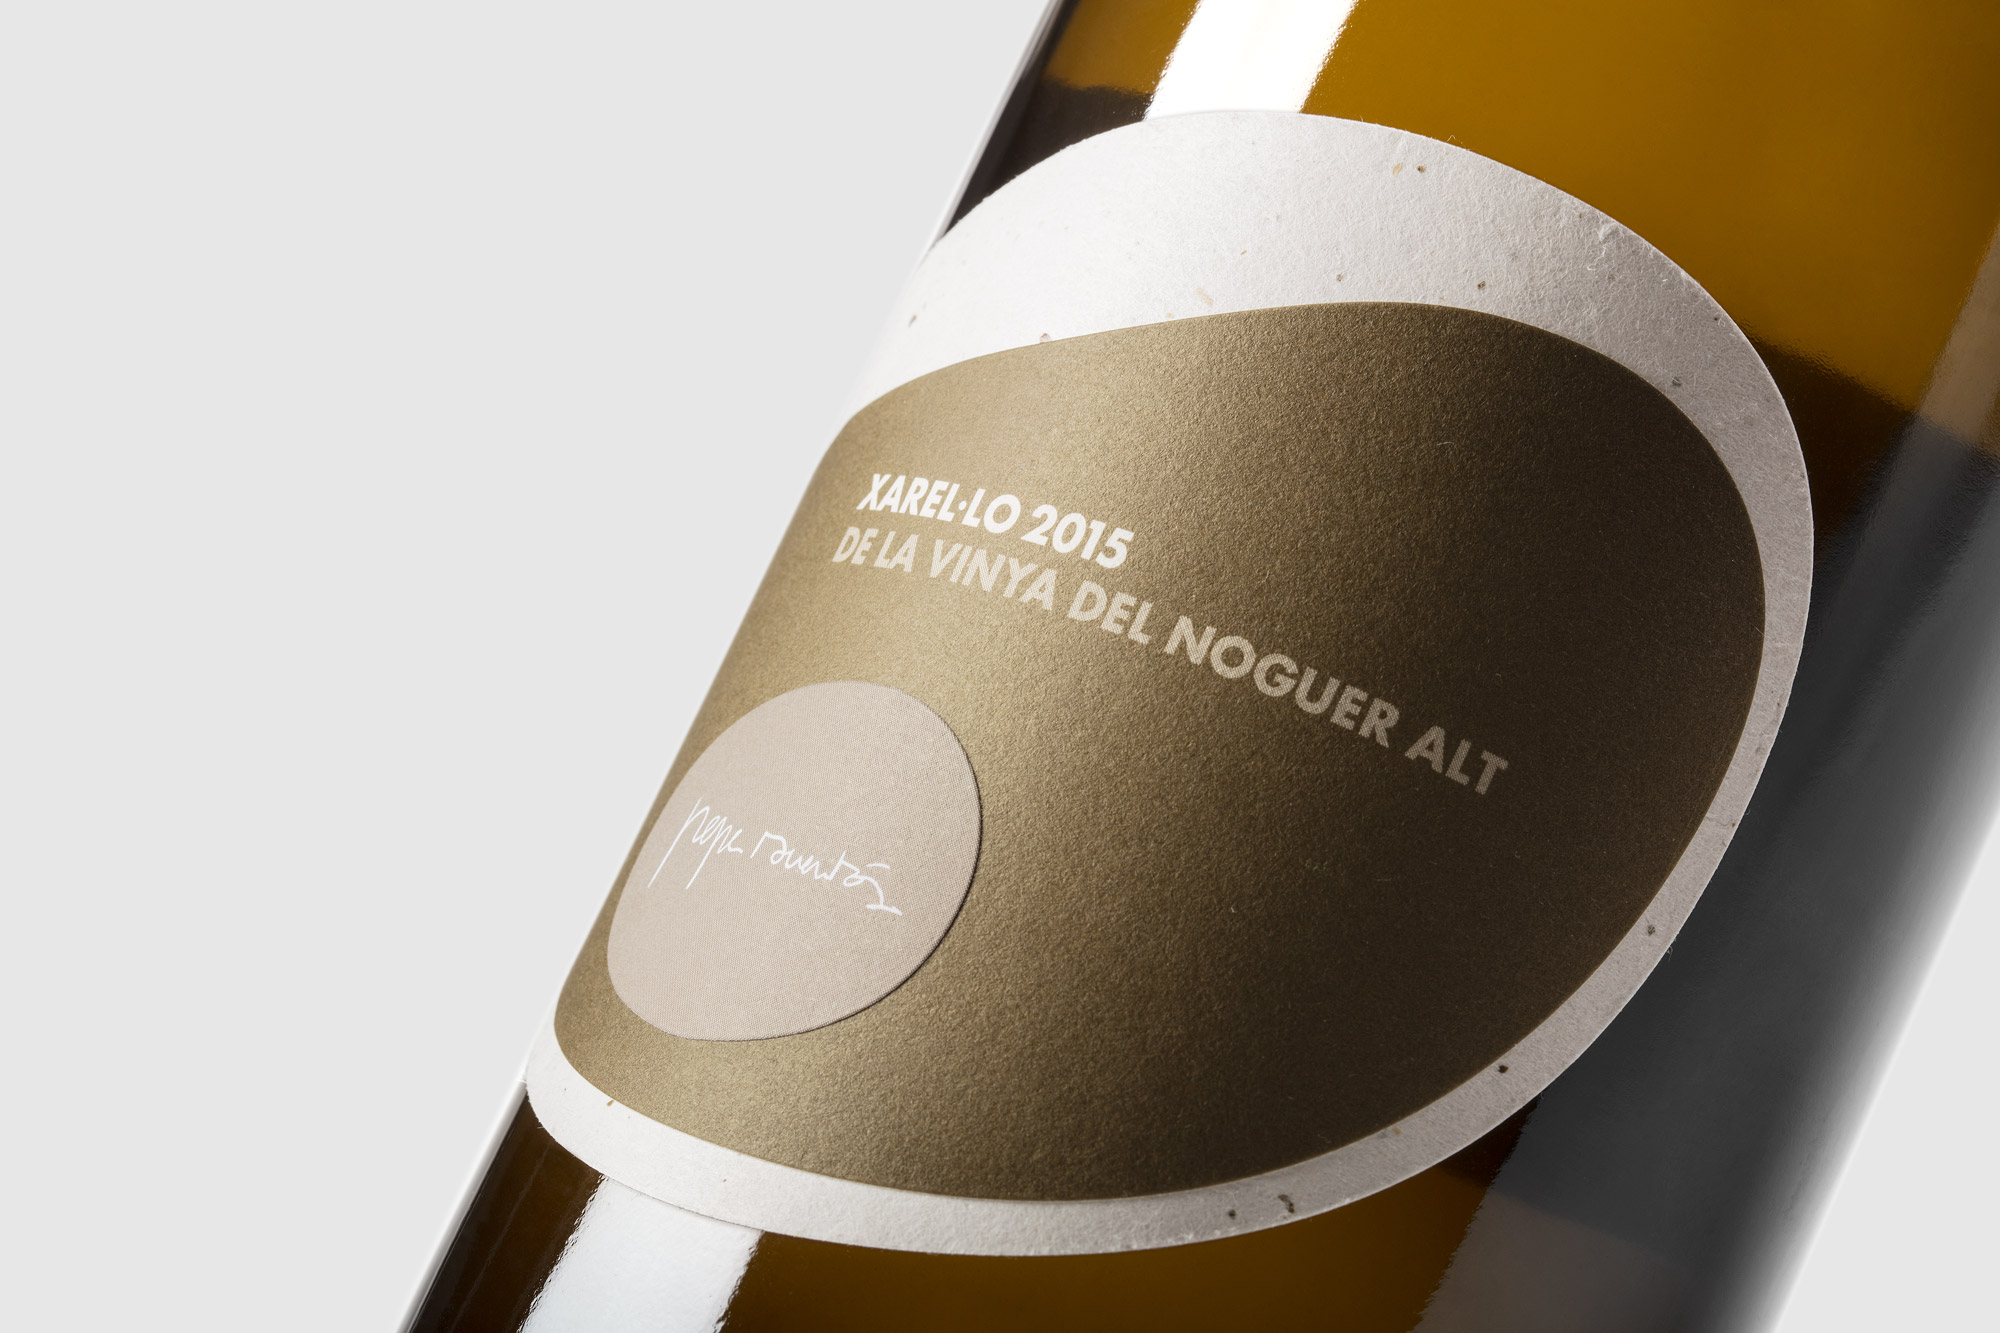 Detall del Xarel·lo de la vinya del Noguer Alt